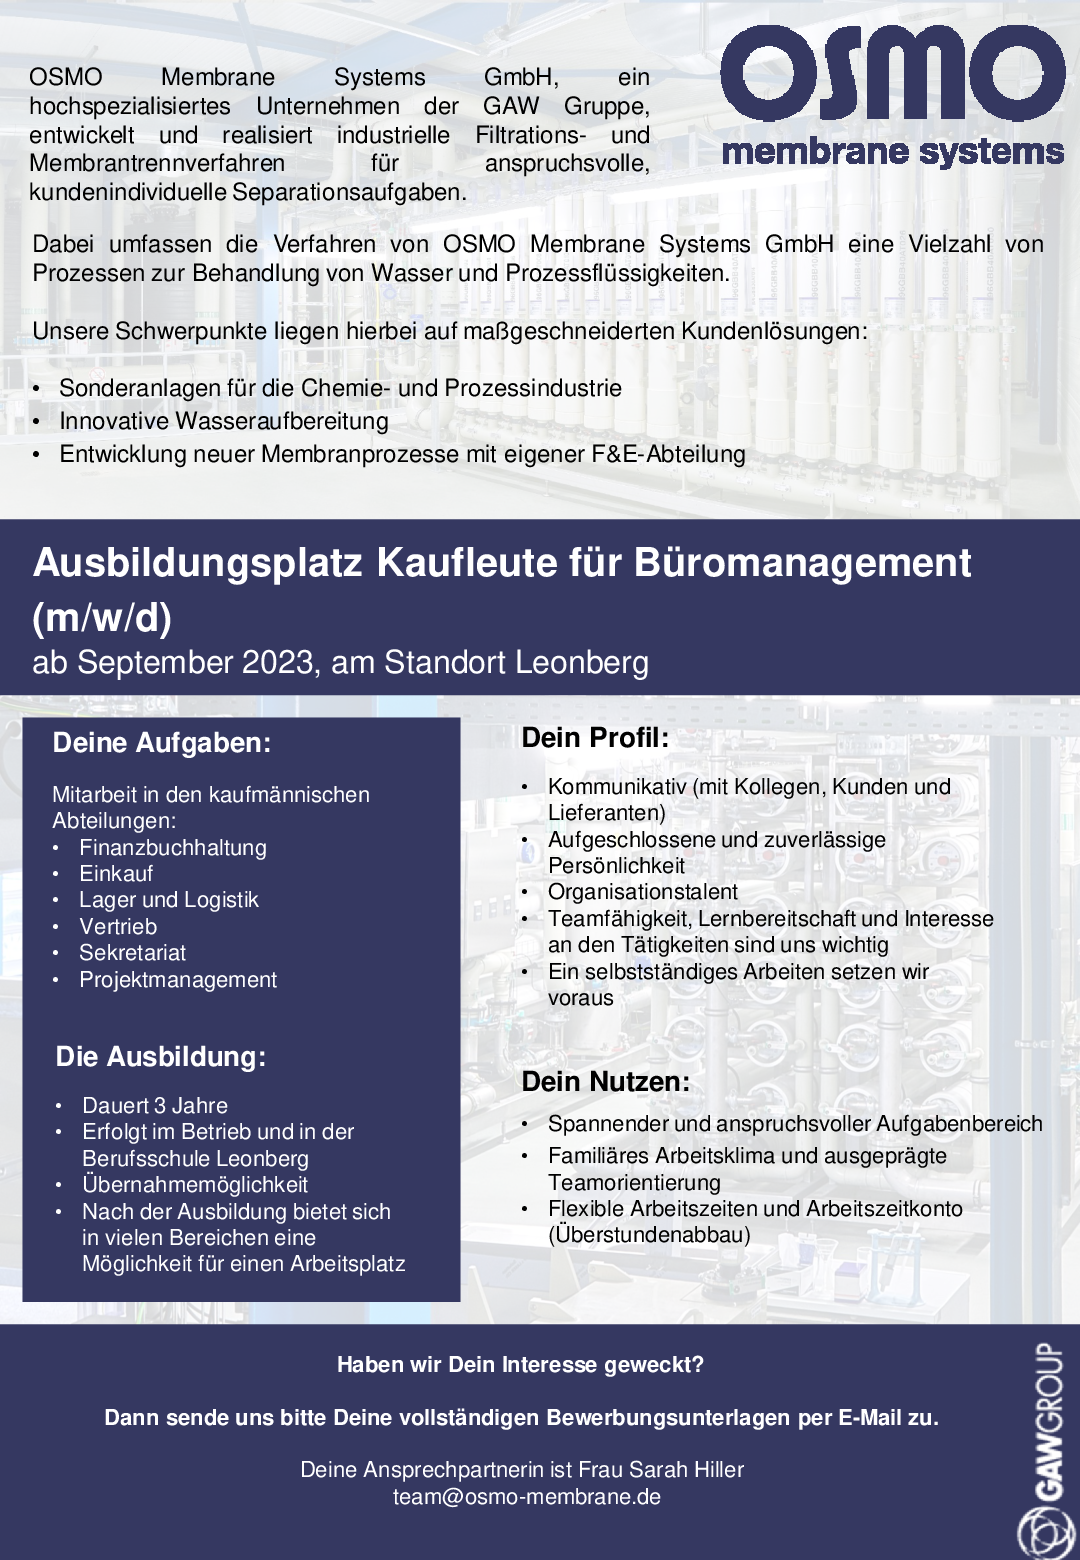 Ausbildung Kaufleute für Büromanagement ab September 2023 OSMO Januar 2023 001